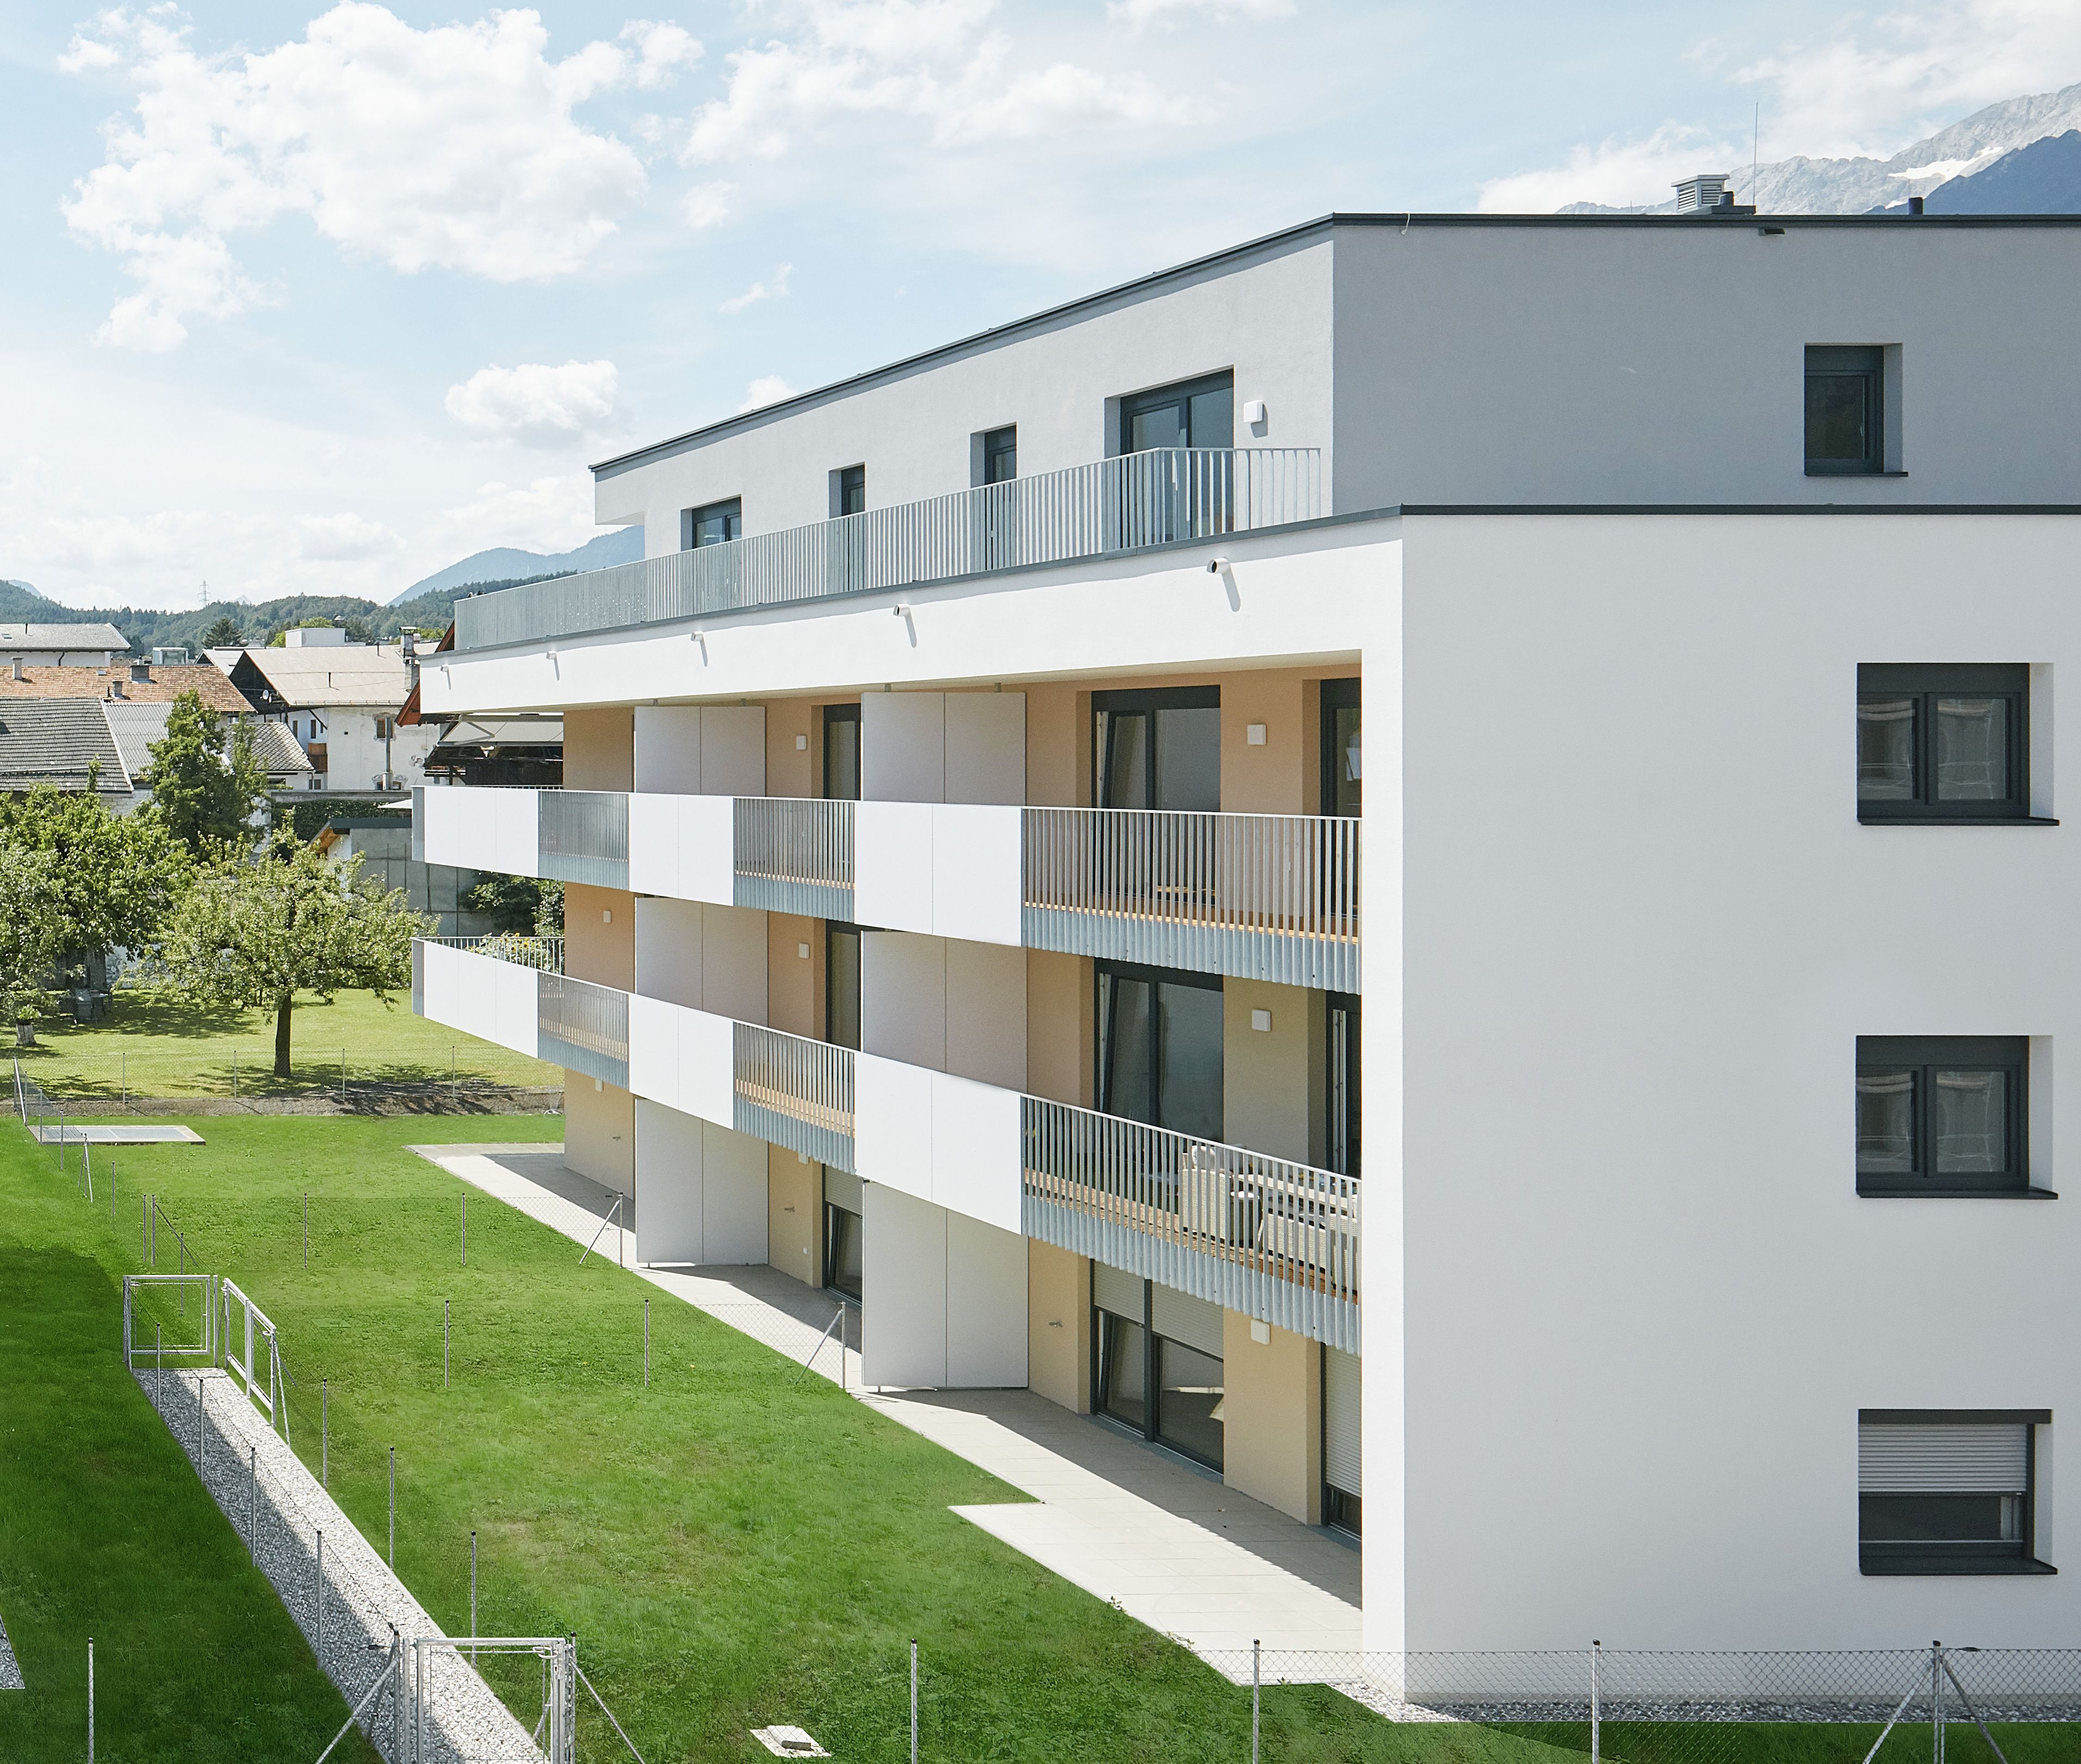 Anton-Auer-Straße 6, 6410 Telfs - Sviluppo di progetti immobiliari